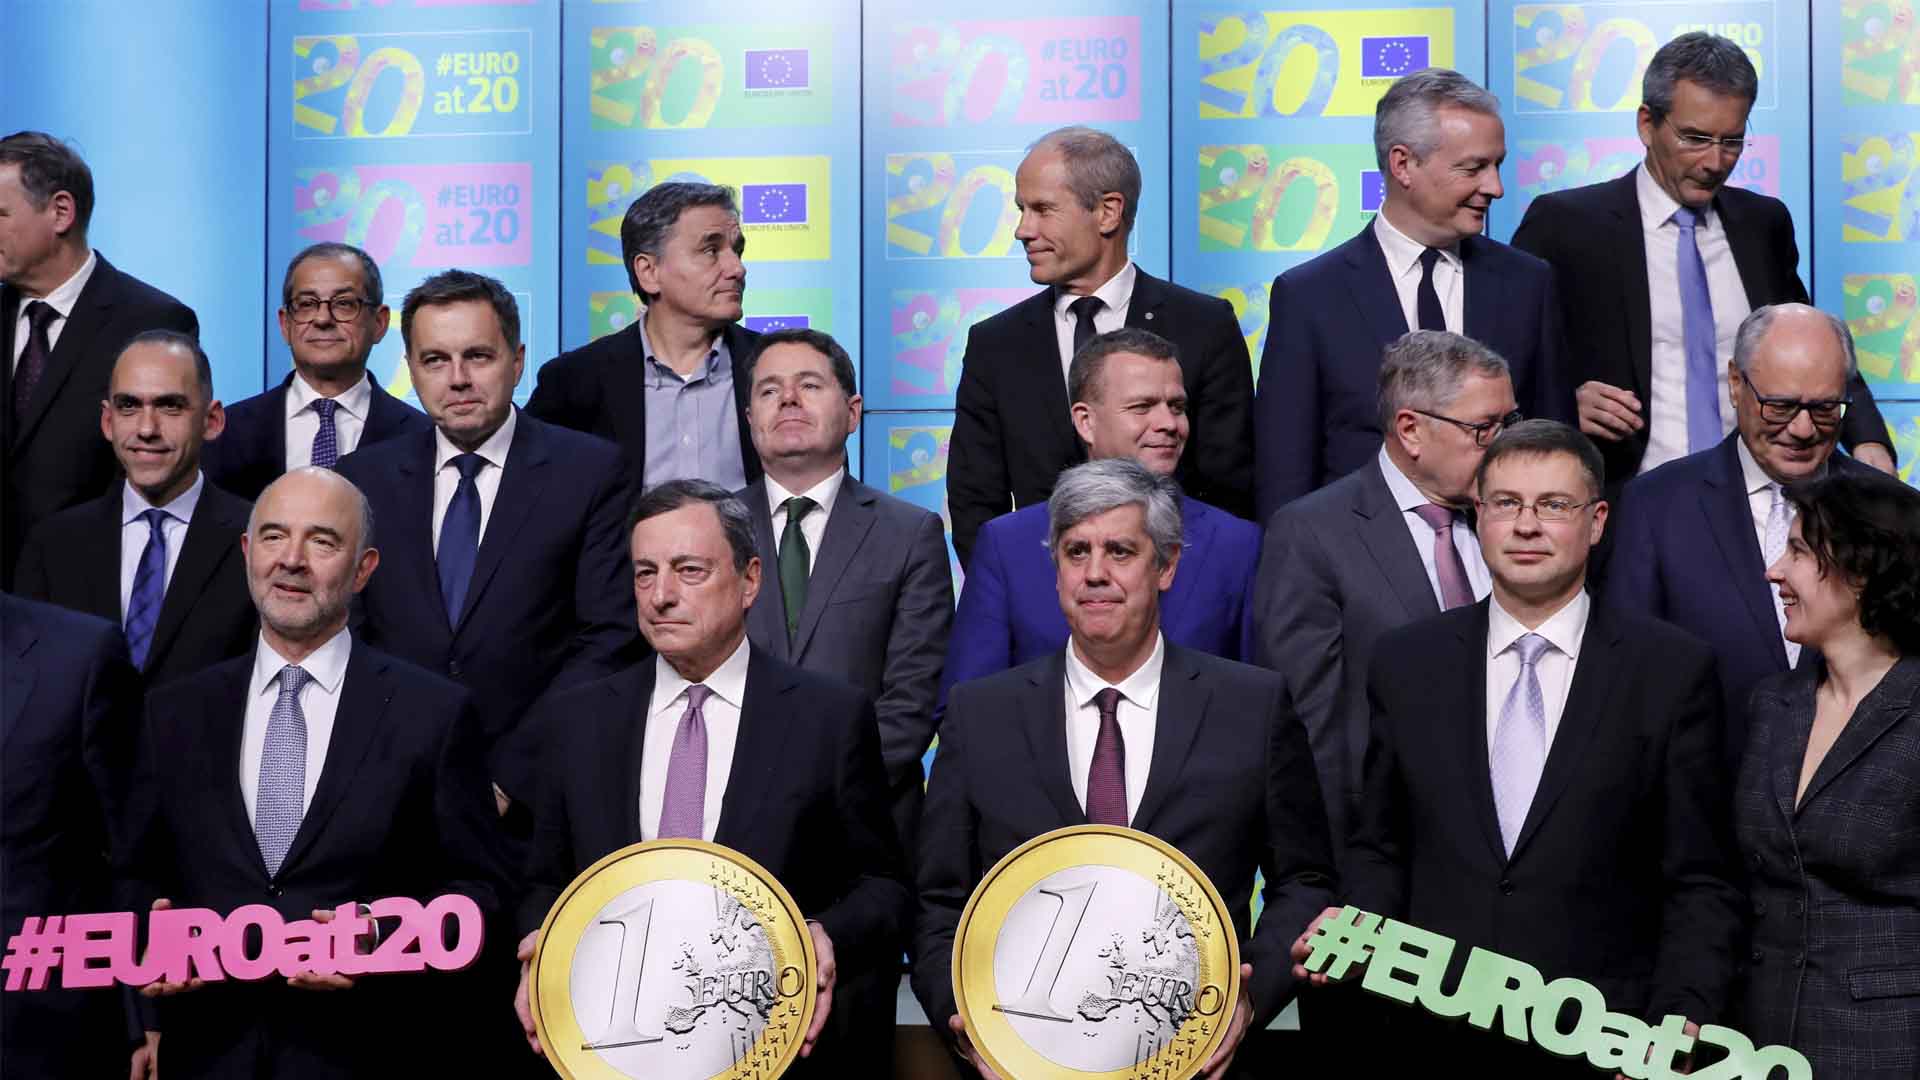 El Eurogrupo logra un acuerdo para reformar la zona euro